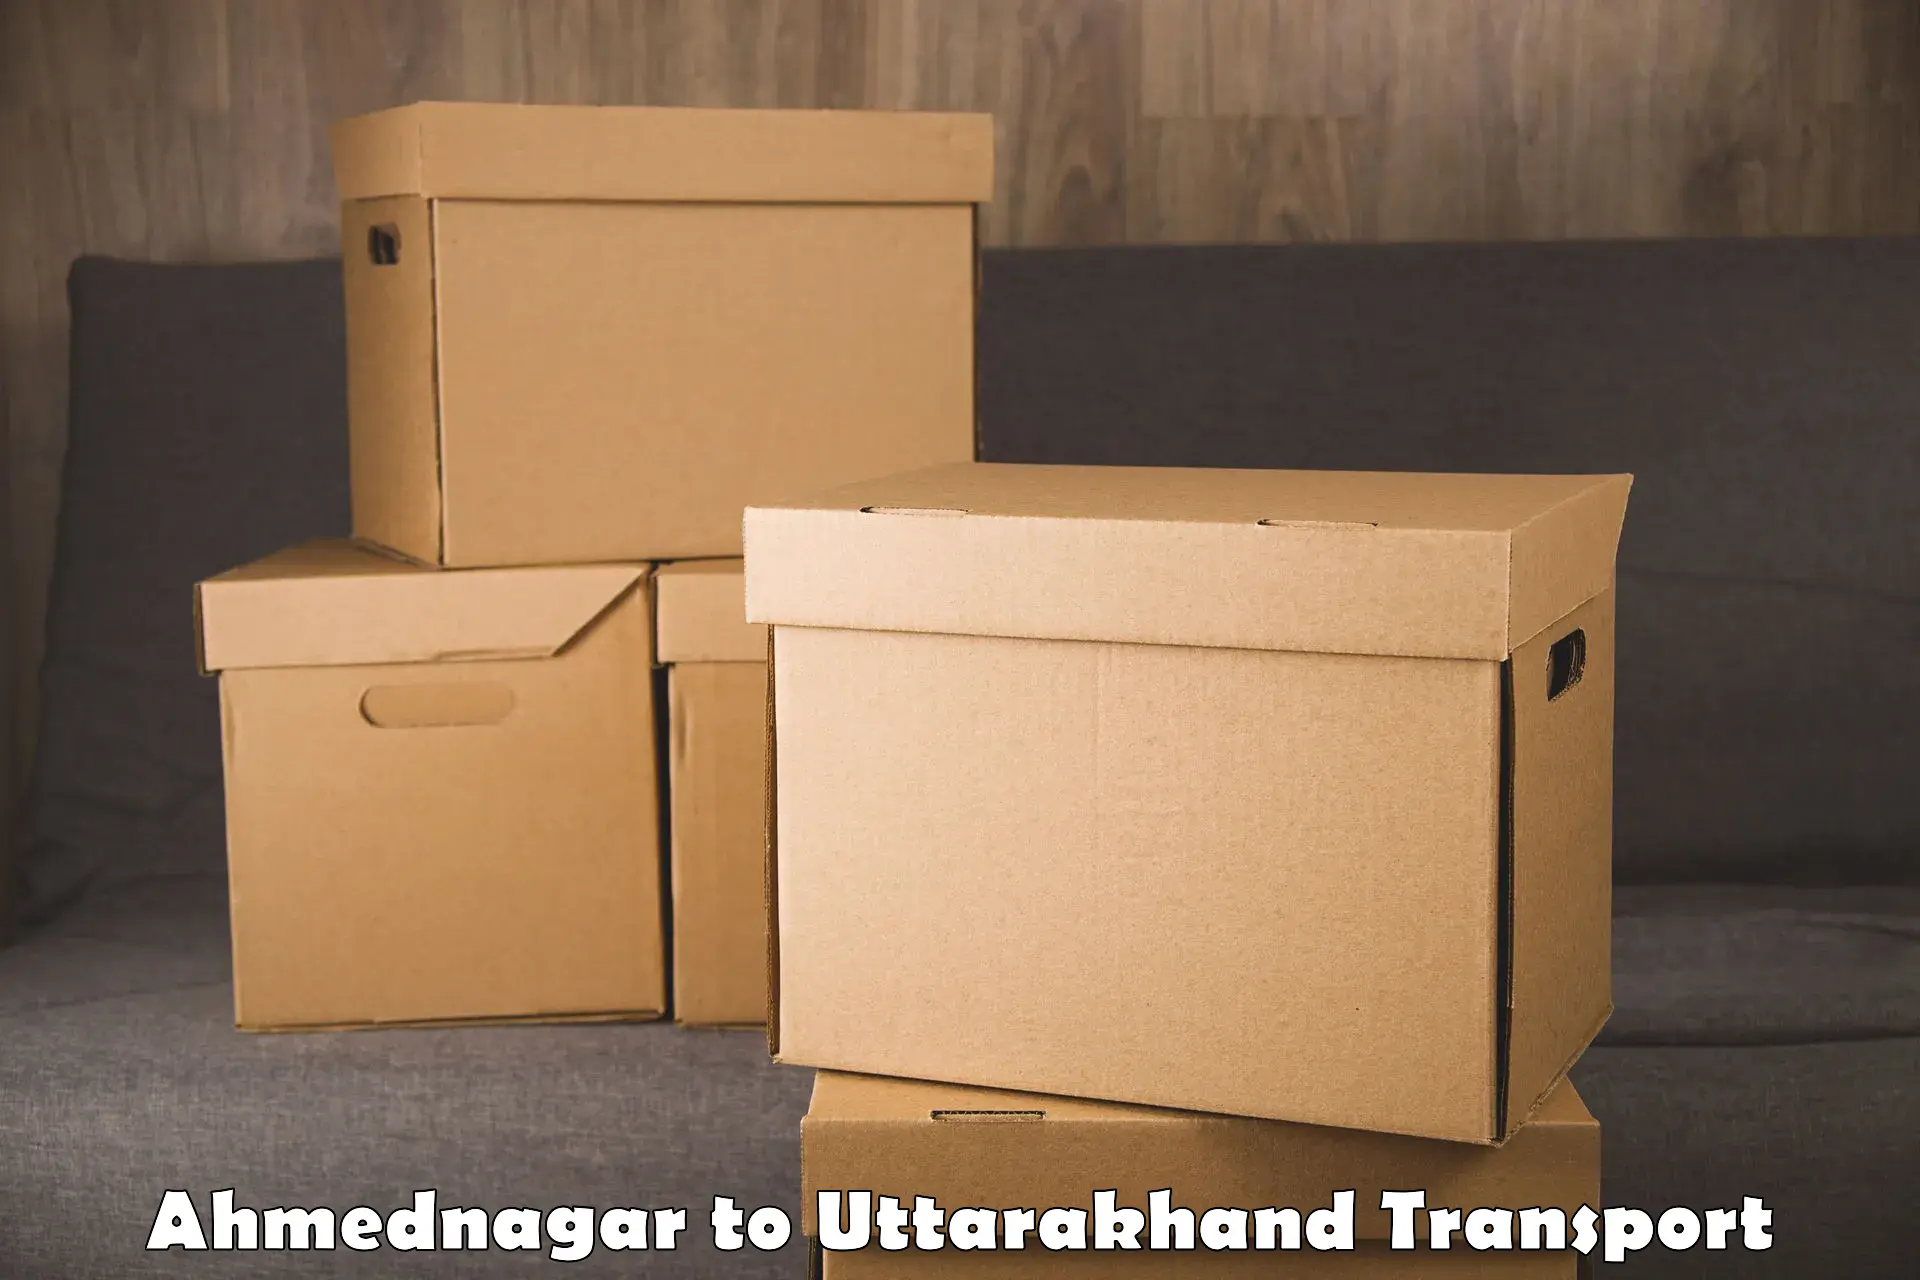 Two wheeler parcel service Ahmednagar to Uttarakhand